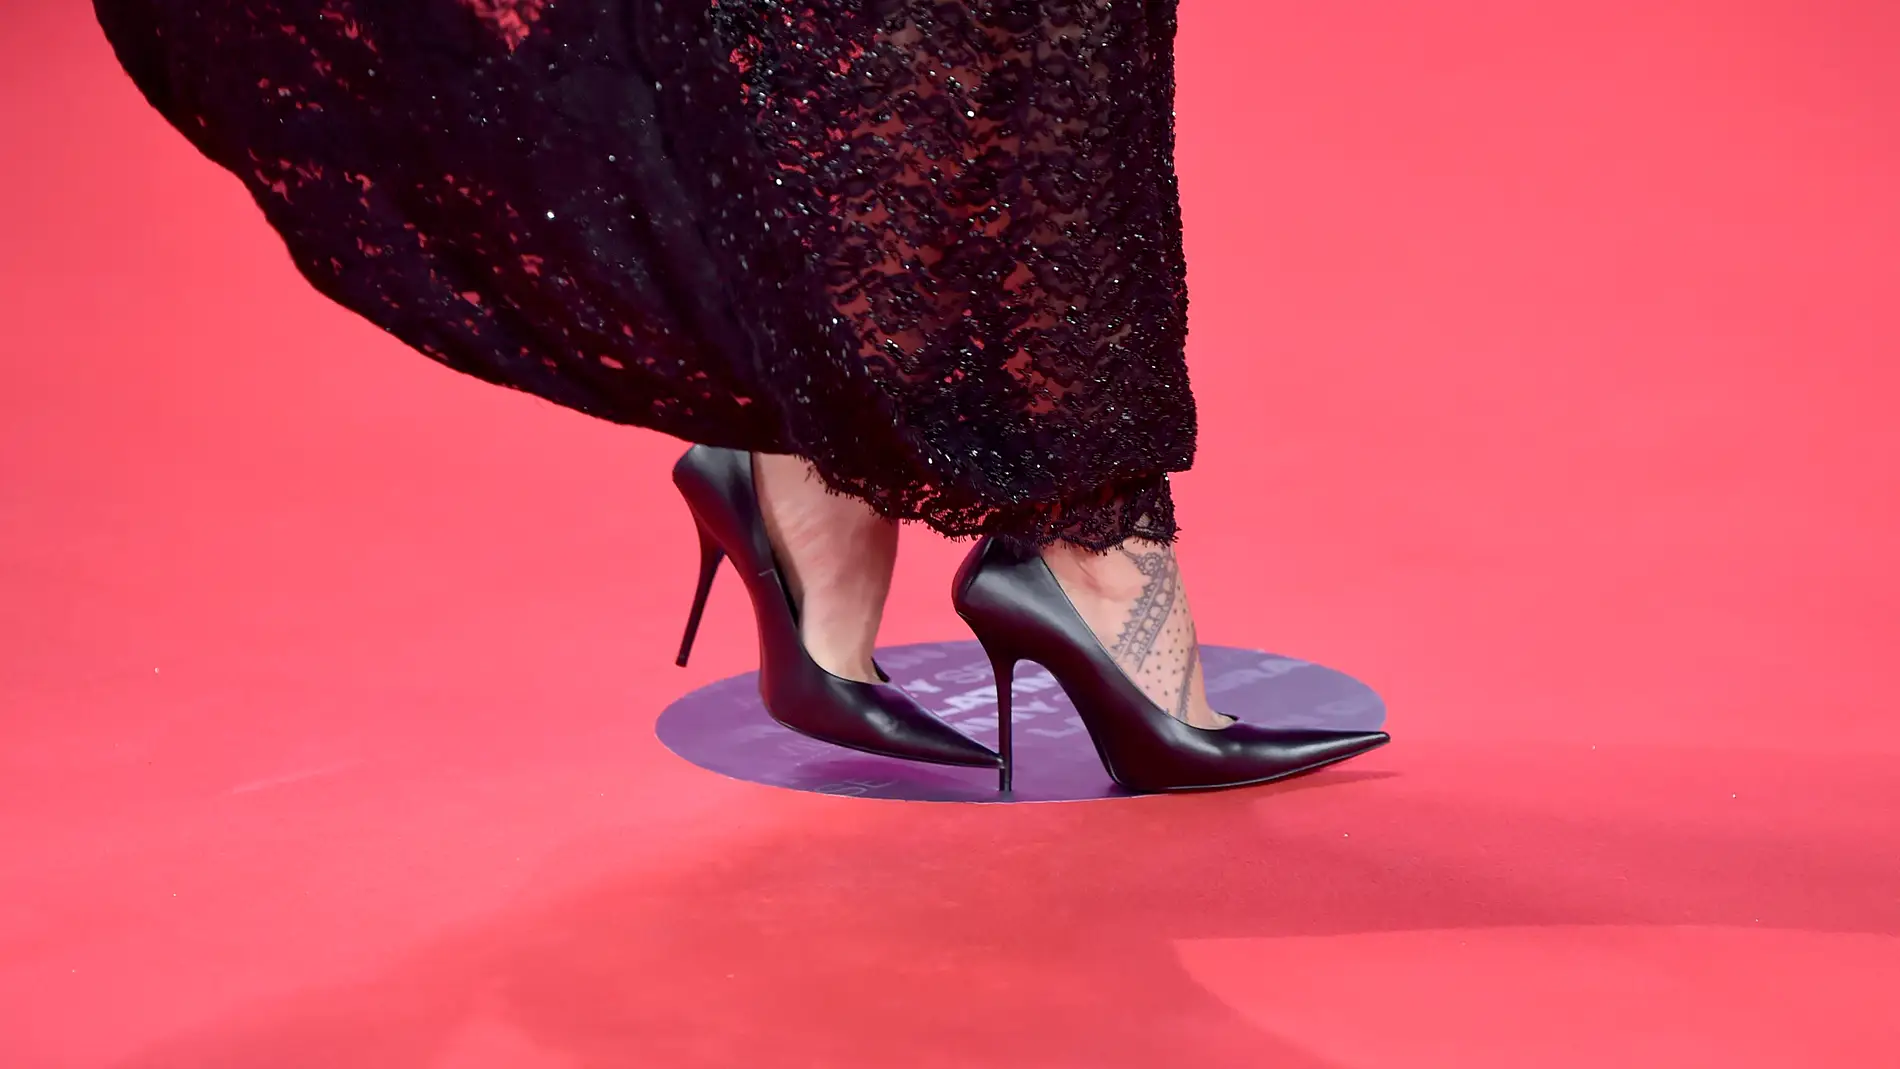 Detalle de los zapatos de Rosalía